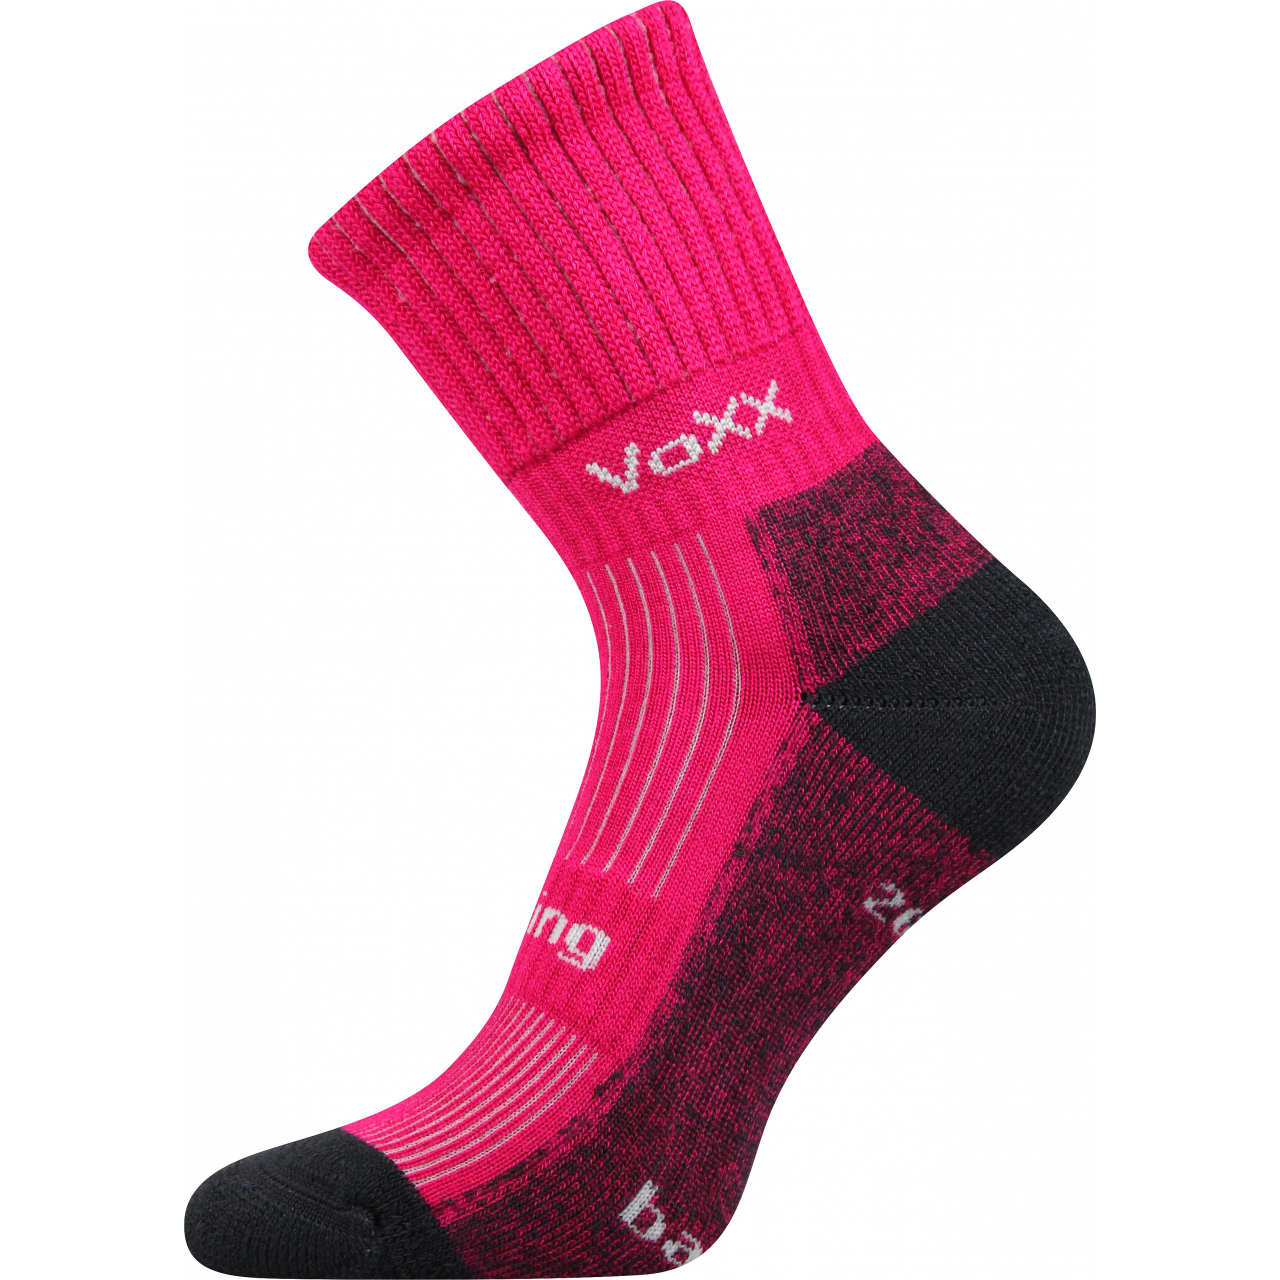 Ponožky sportovní unisex Voxx Bomber - tmavě růžové, 35-38